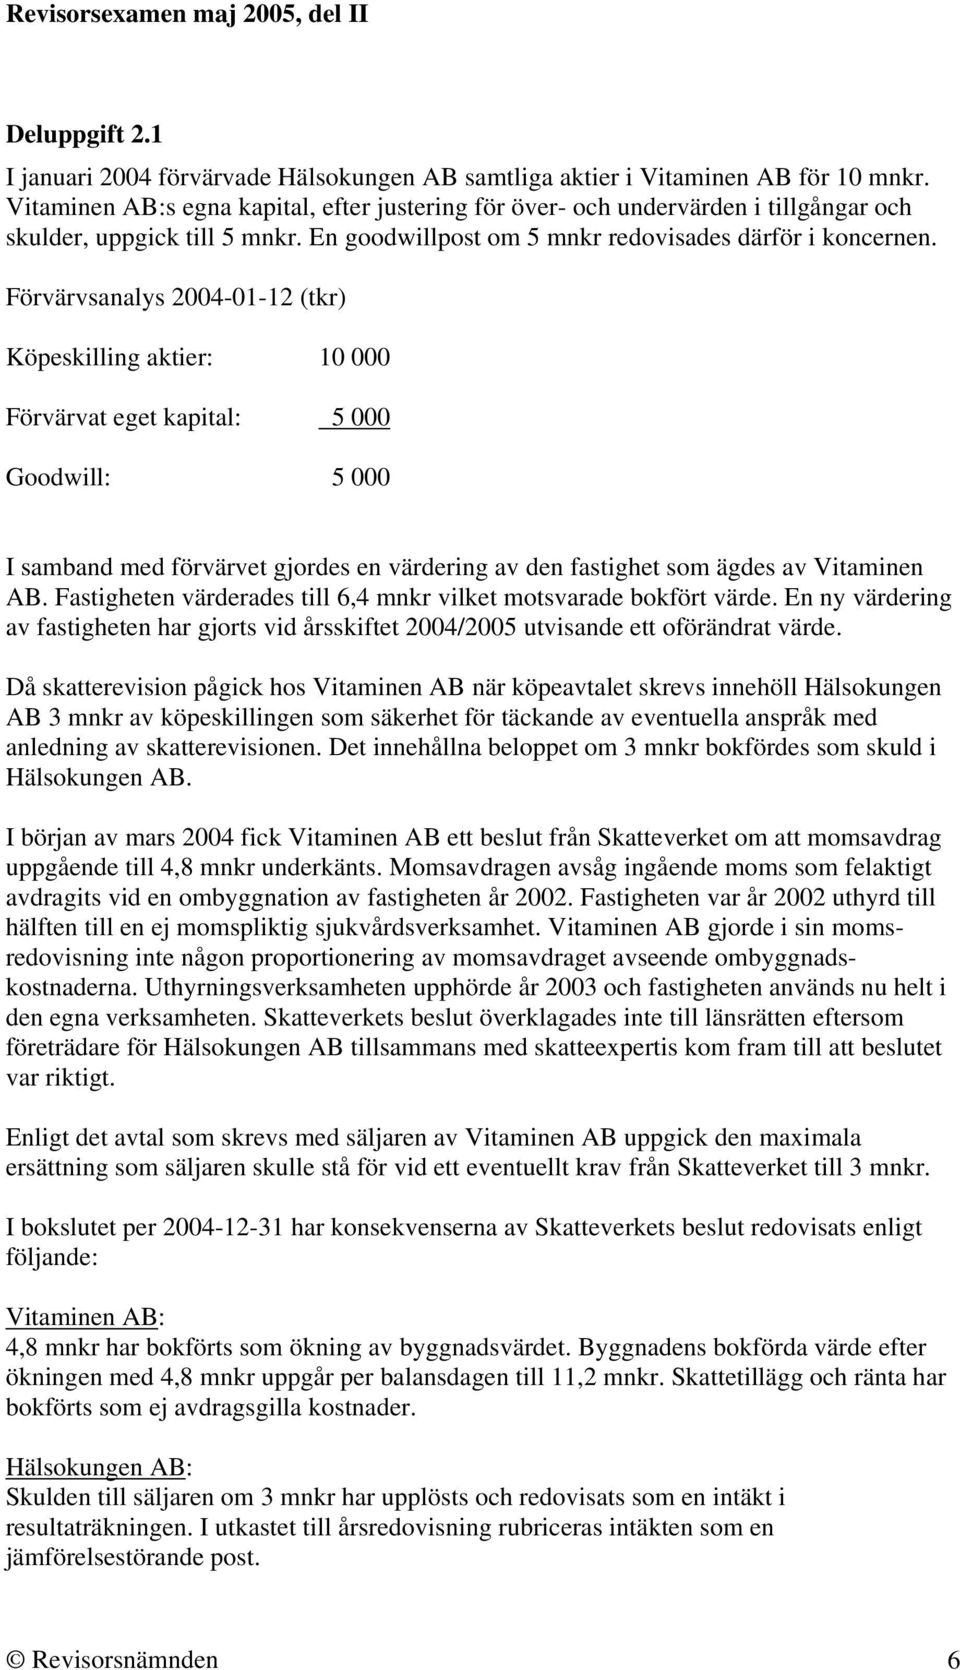 Förvärvsanalys 2004-01-12 (tkr) Köpeskilling aktier: 10 000 Förvärvat eget kapital: 5 000 Goodwill: 5 000 I samband med förvärvet gjordes en värdering av den fastighet som ägdes av Vitaminen AB.